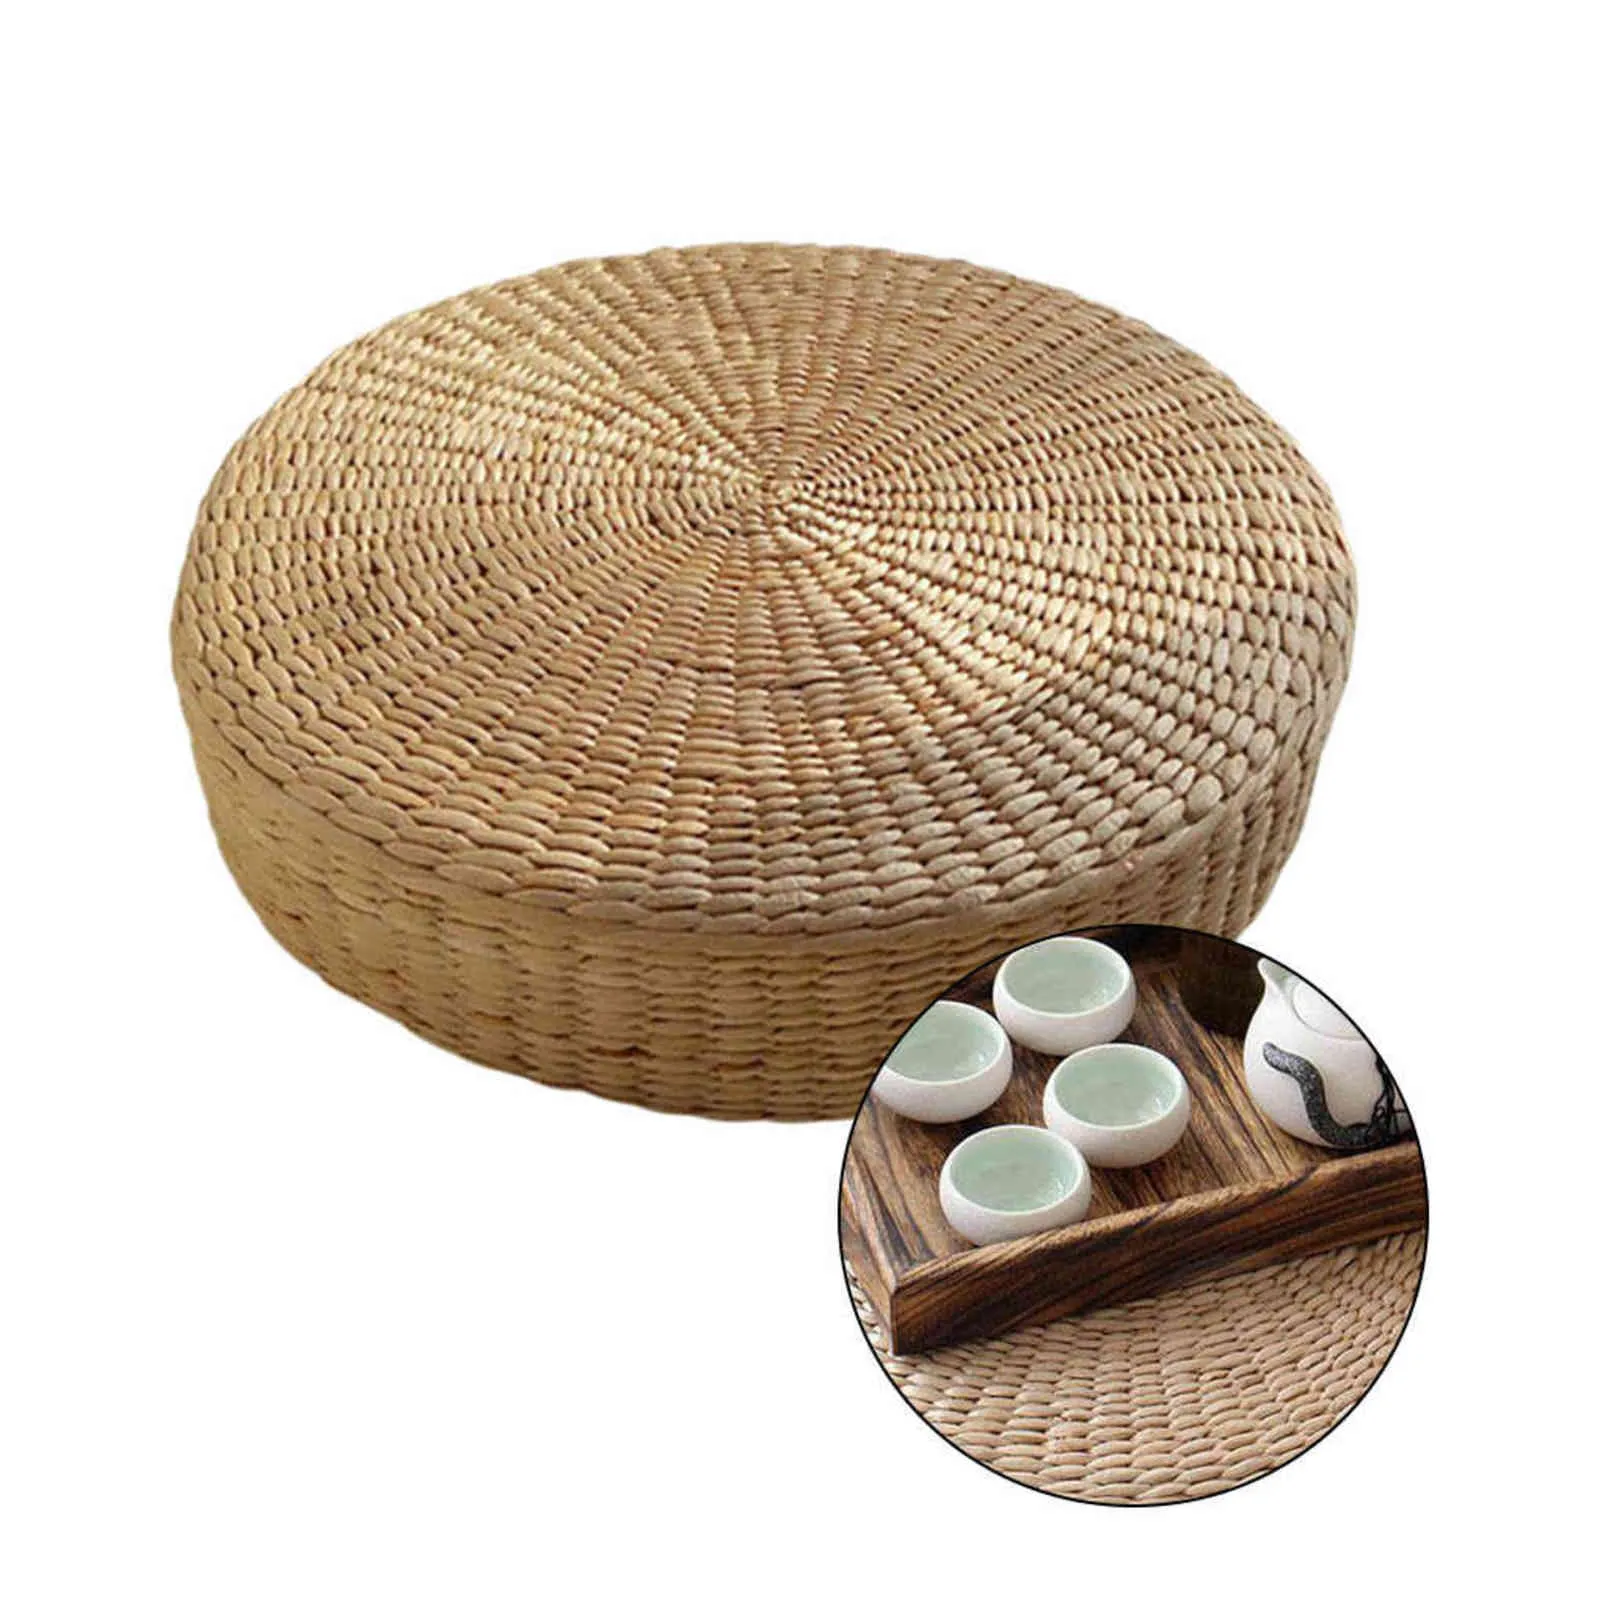 Poduszka podłogowa ekologiczna okrągła słoma poduszka ręcznie tkana tatami mata joga ceremonia herbaty podkładka medytacyjna 2111102507020